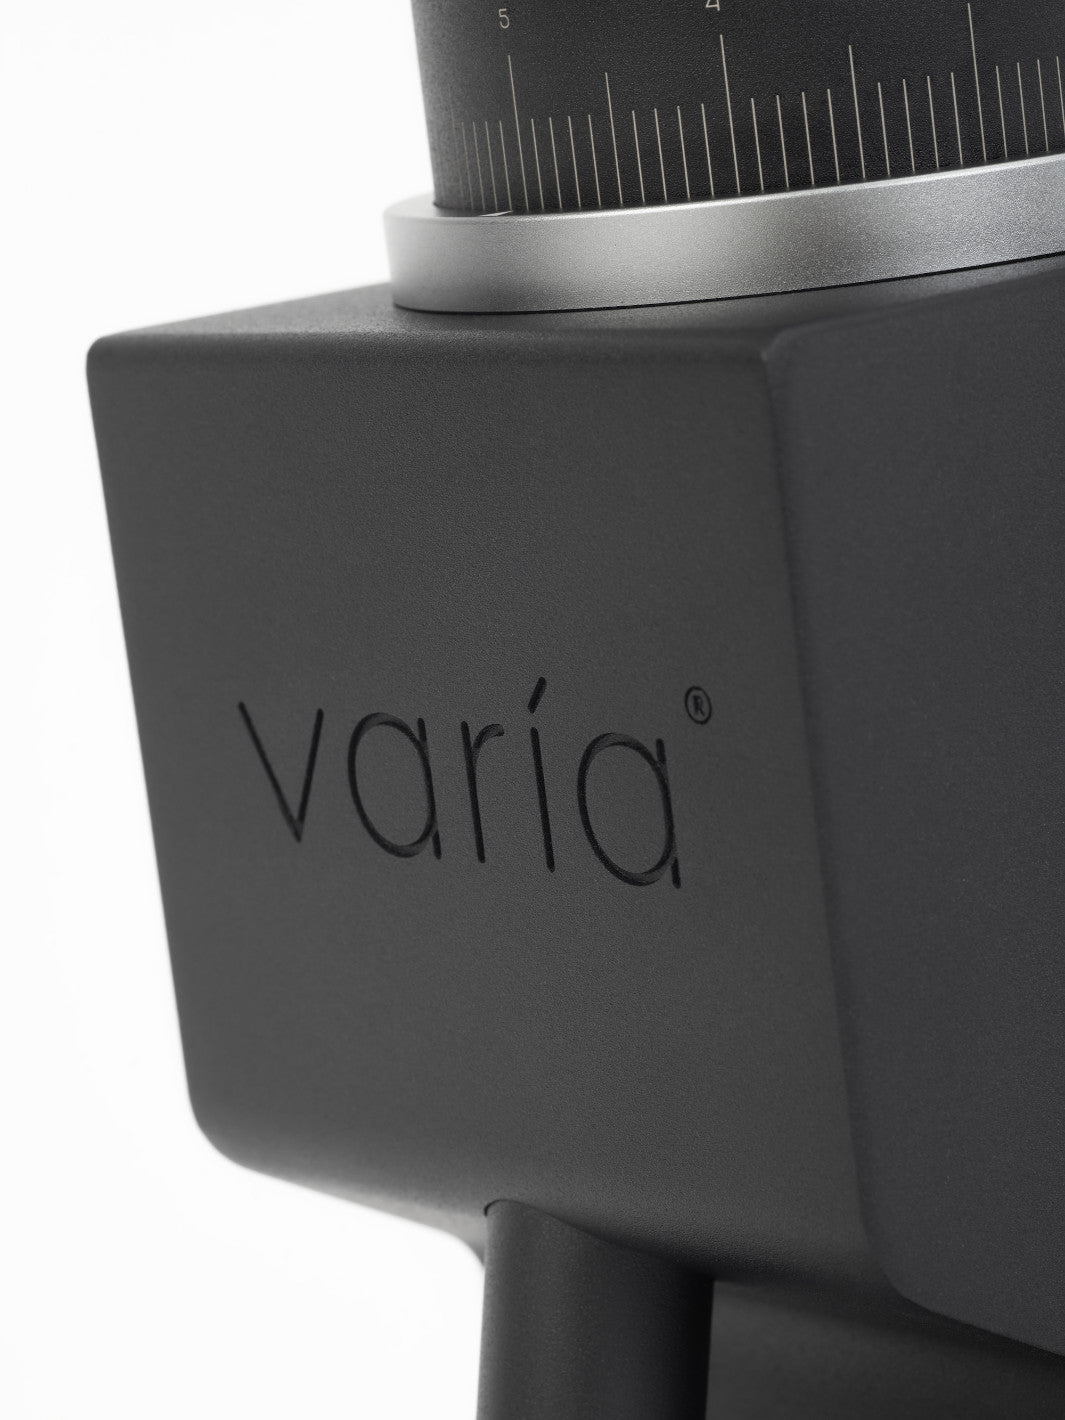 VARIA VS3 Grinder (2nd Gen) (120V) (Lightly Used)